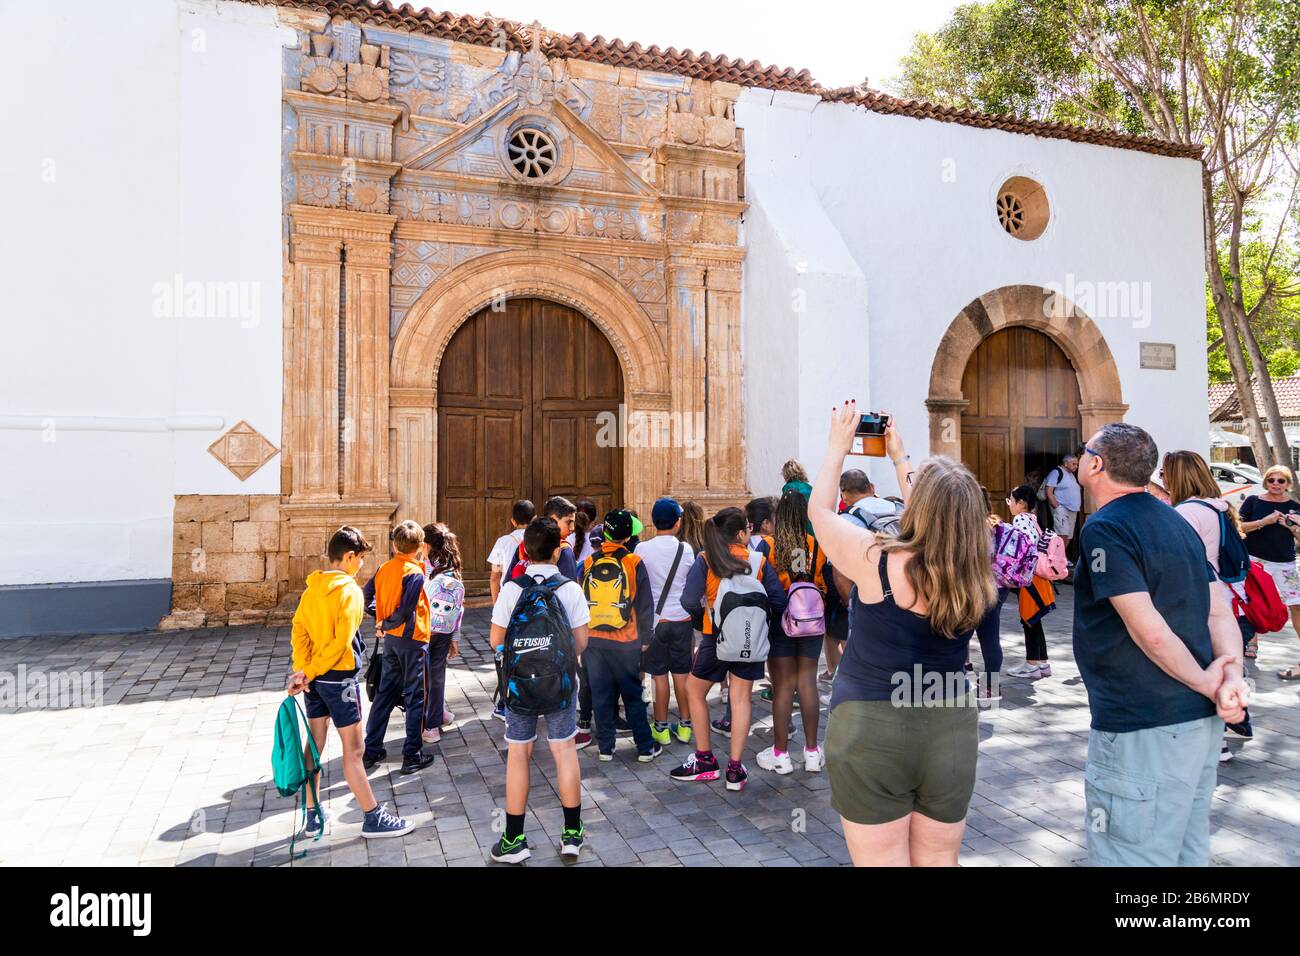 Un gruppo scolastico e turisti che ammirano l'intaglio con influenze azteche sulla chiesa di Iglesia Nuestra Senora de la Regla a Pajara sulle isole Canarie Foto Stock